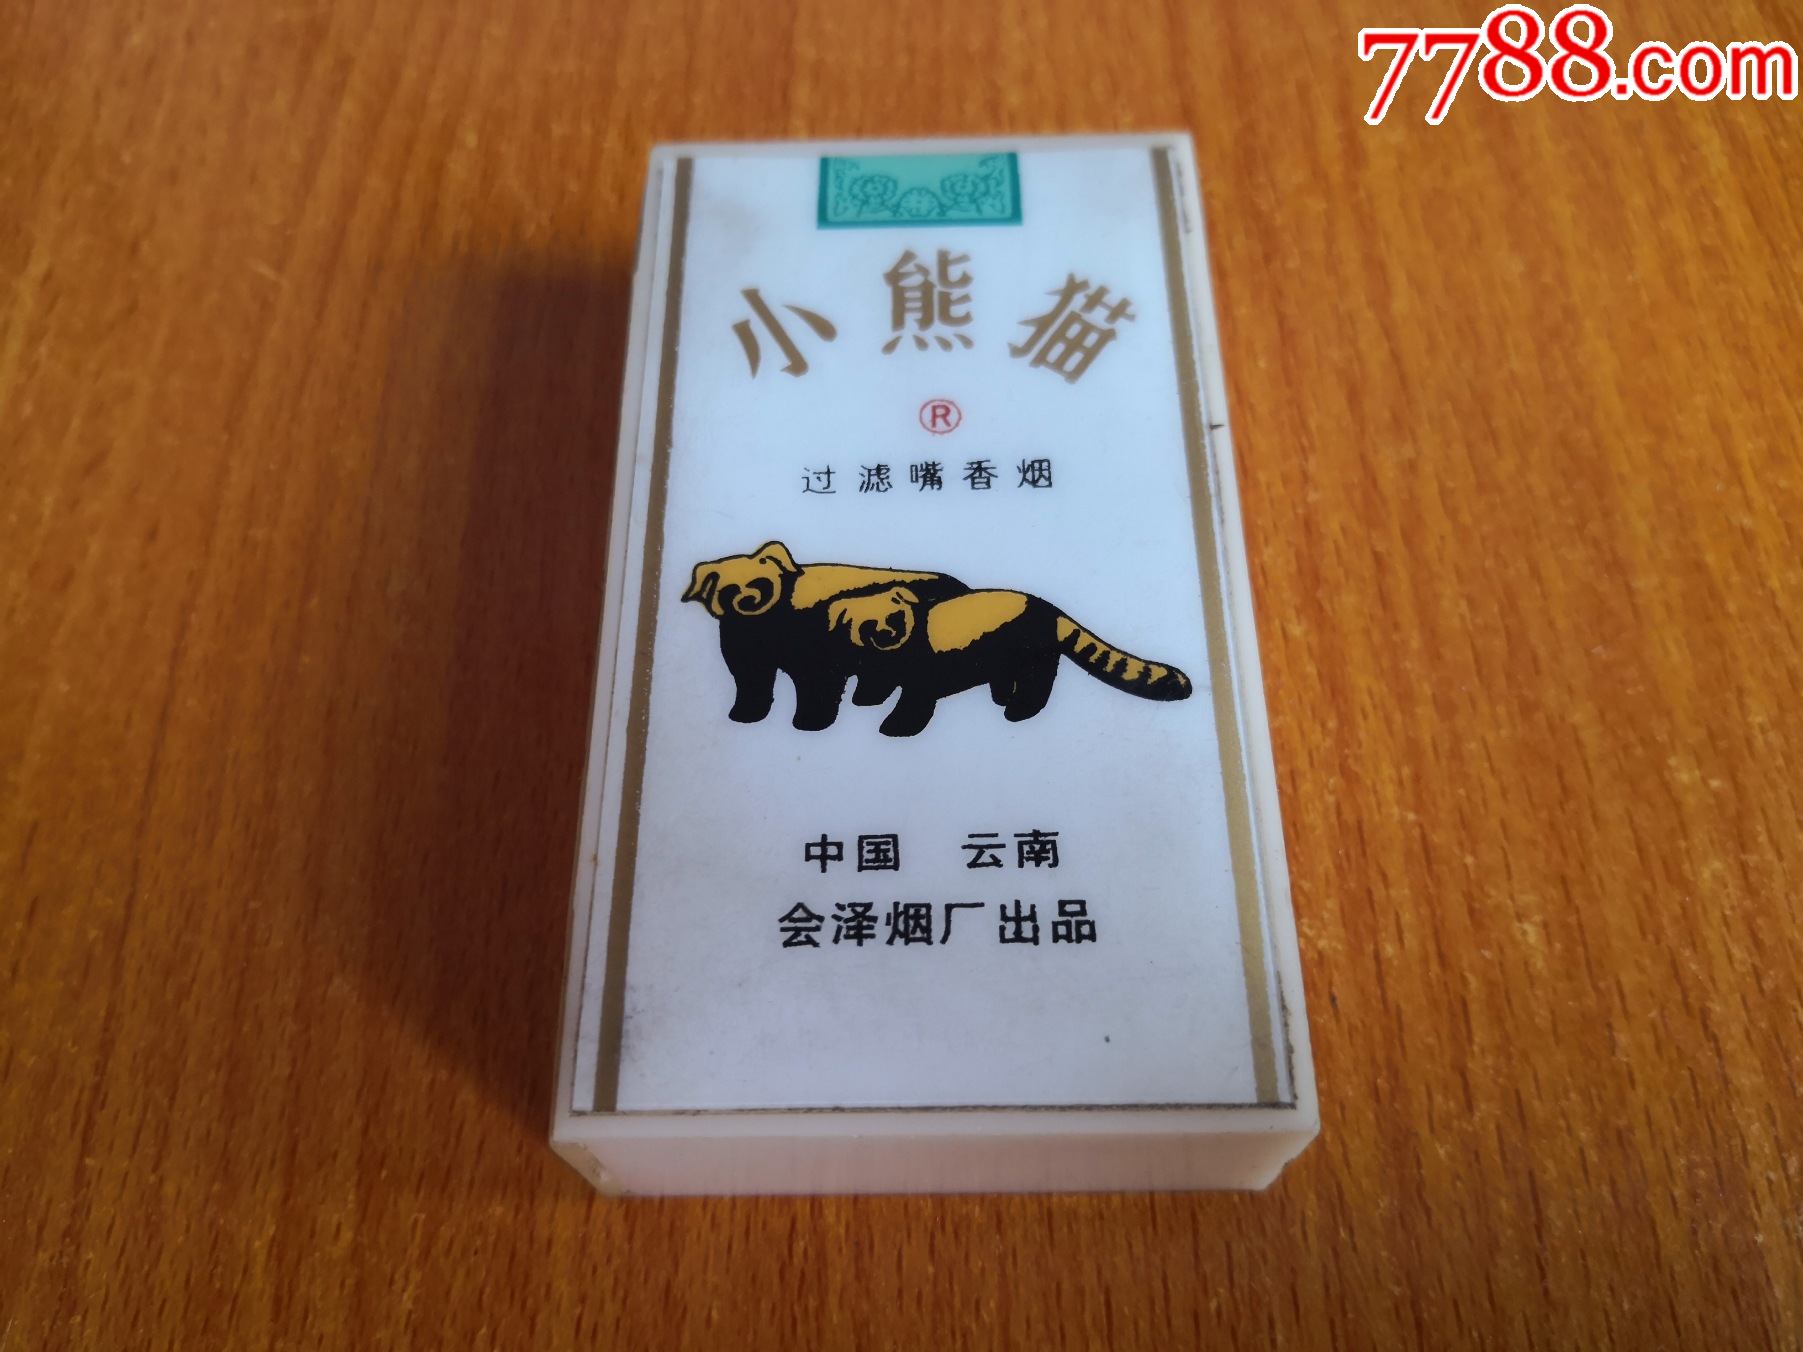 熊猫香烟10支装图片